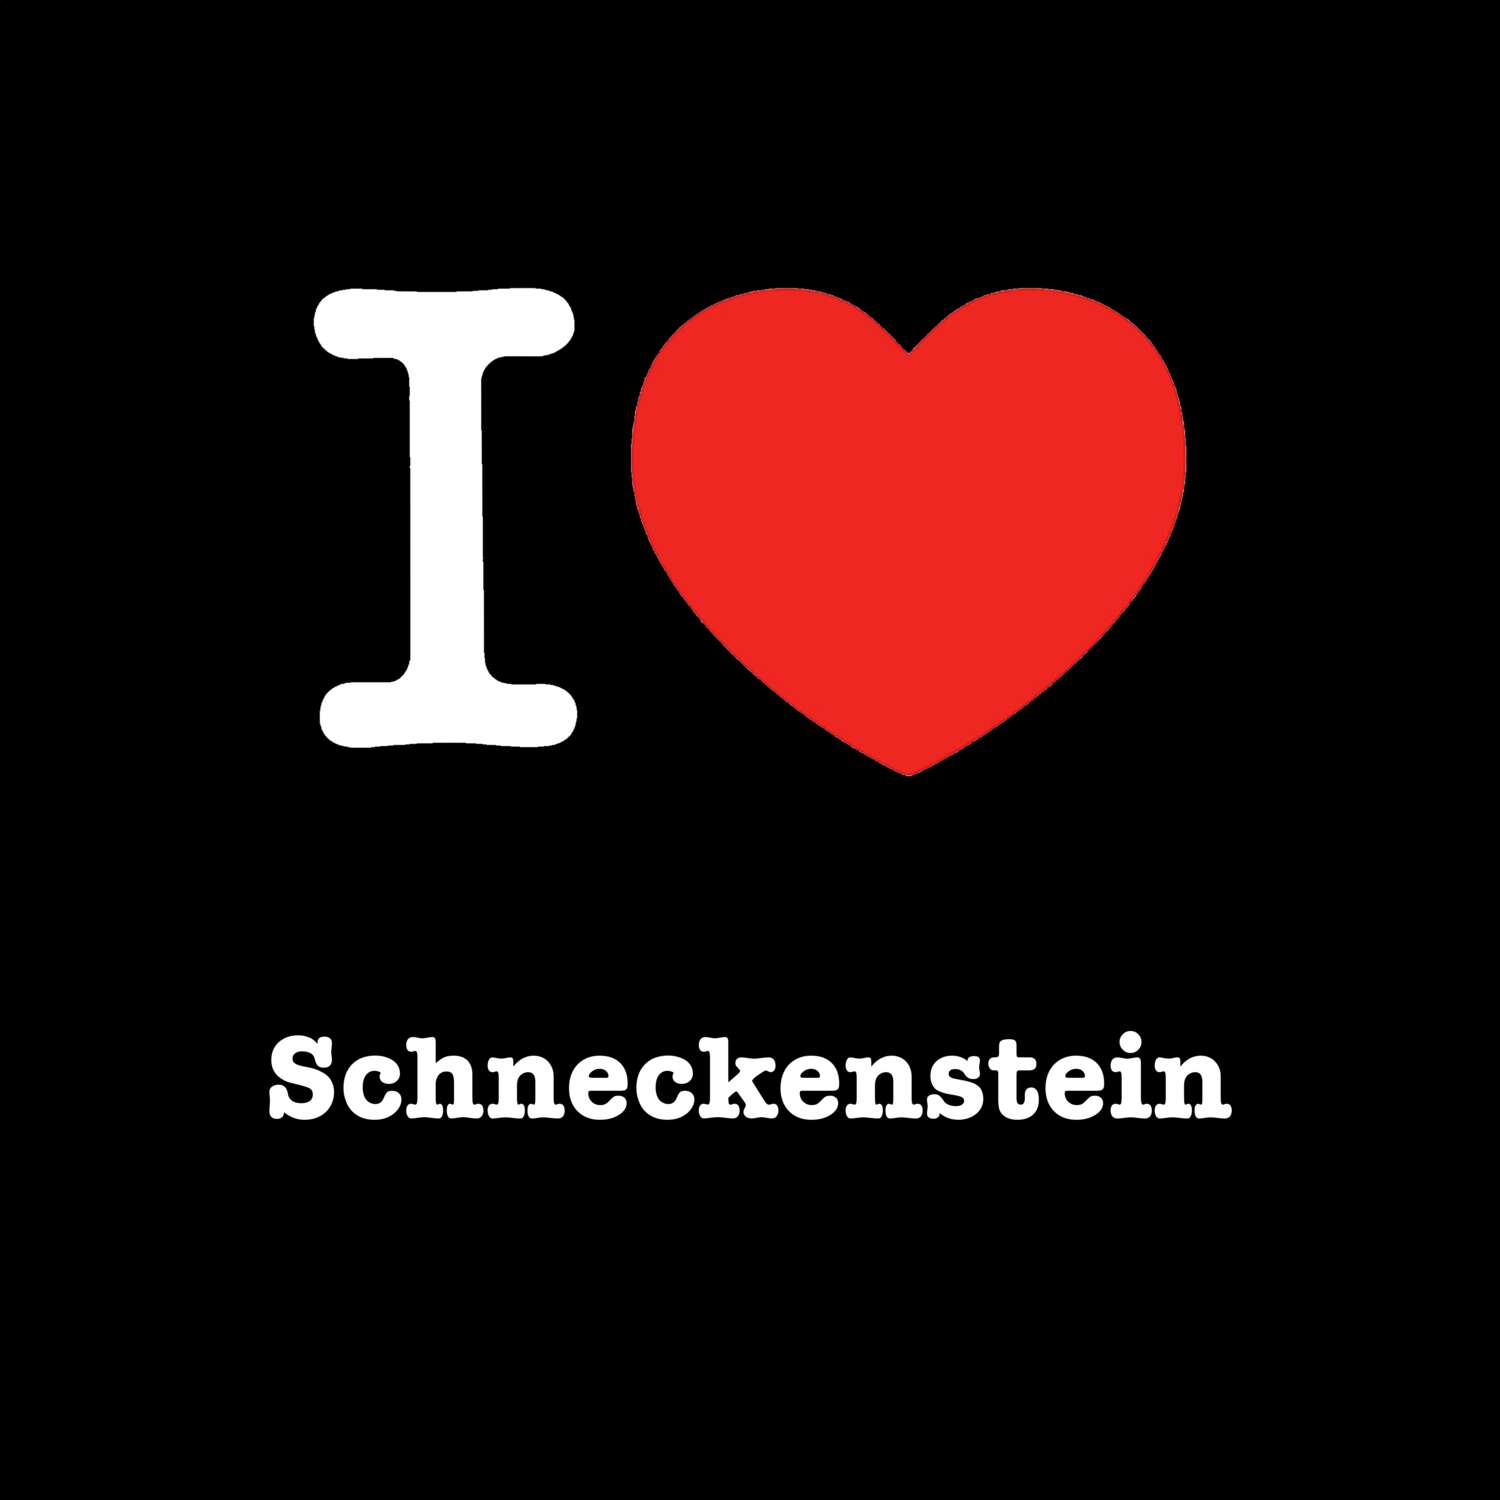 Schneckenstein T-Shirt »I love«